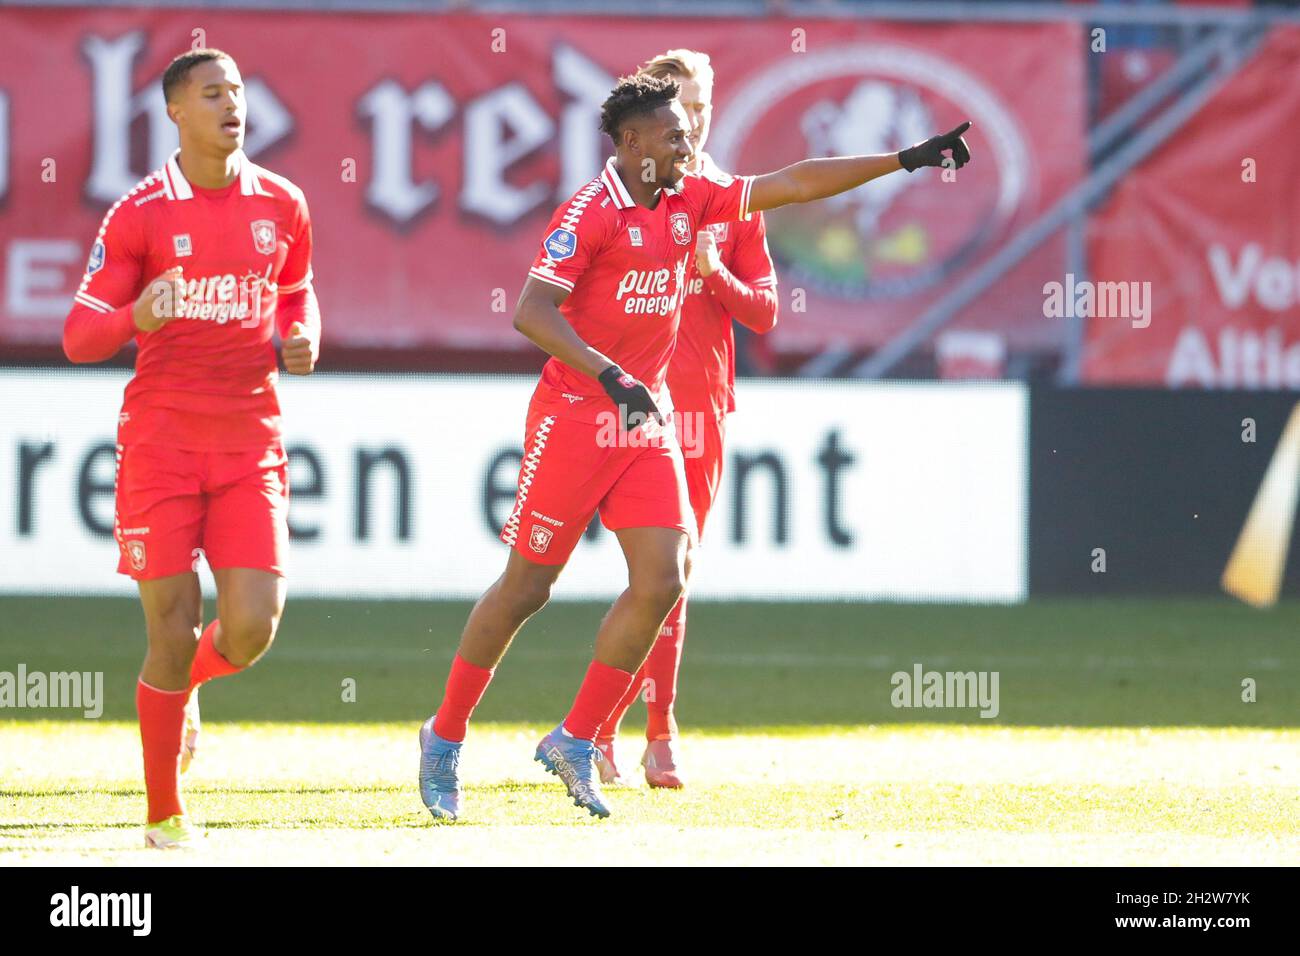 ENSCHEDE, NETHERLANDS - OCTOBER 24: Virgil Misidjan of FC Twente celebrates  after scoring his sides first goal during the Dutch Eredivisie match  between FC Twente and N.E.C. at De Grolsch Veste on